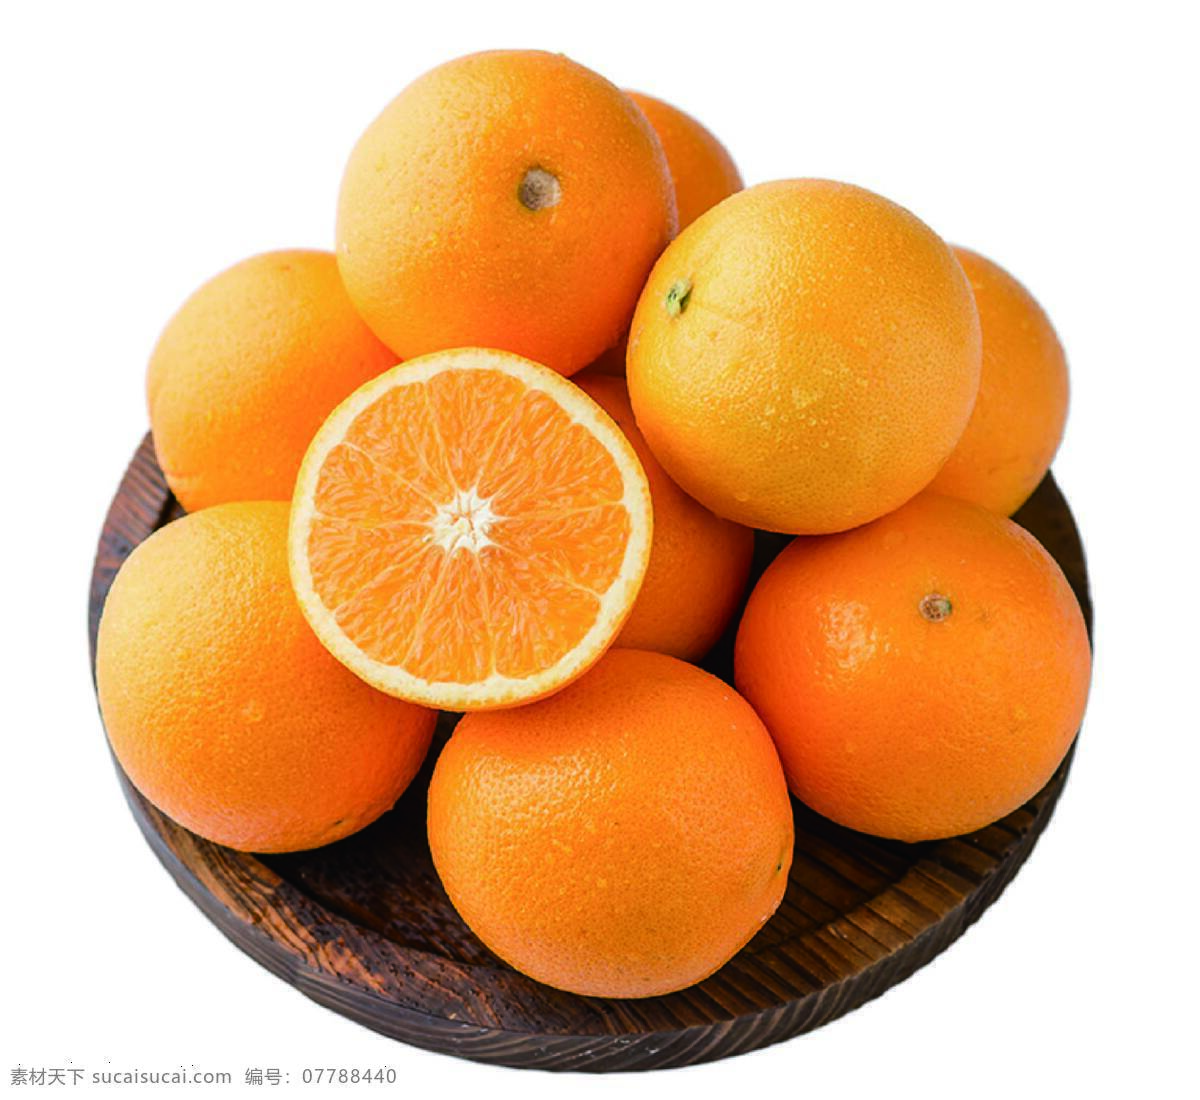 水果 橙子 甜橙 香橙 甜 食品 新鲜 营养 维生素 新鲜水果 餐饮美食 食物原料